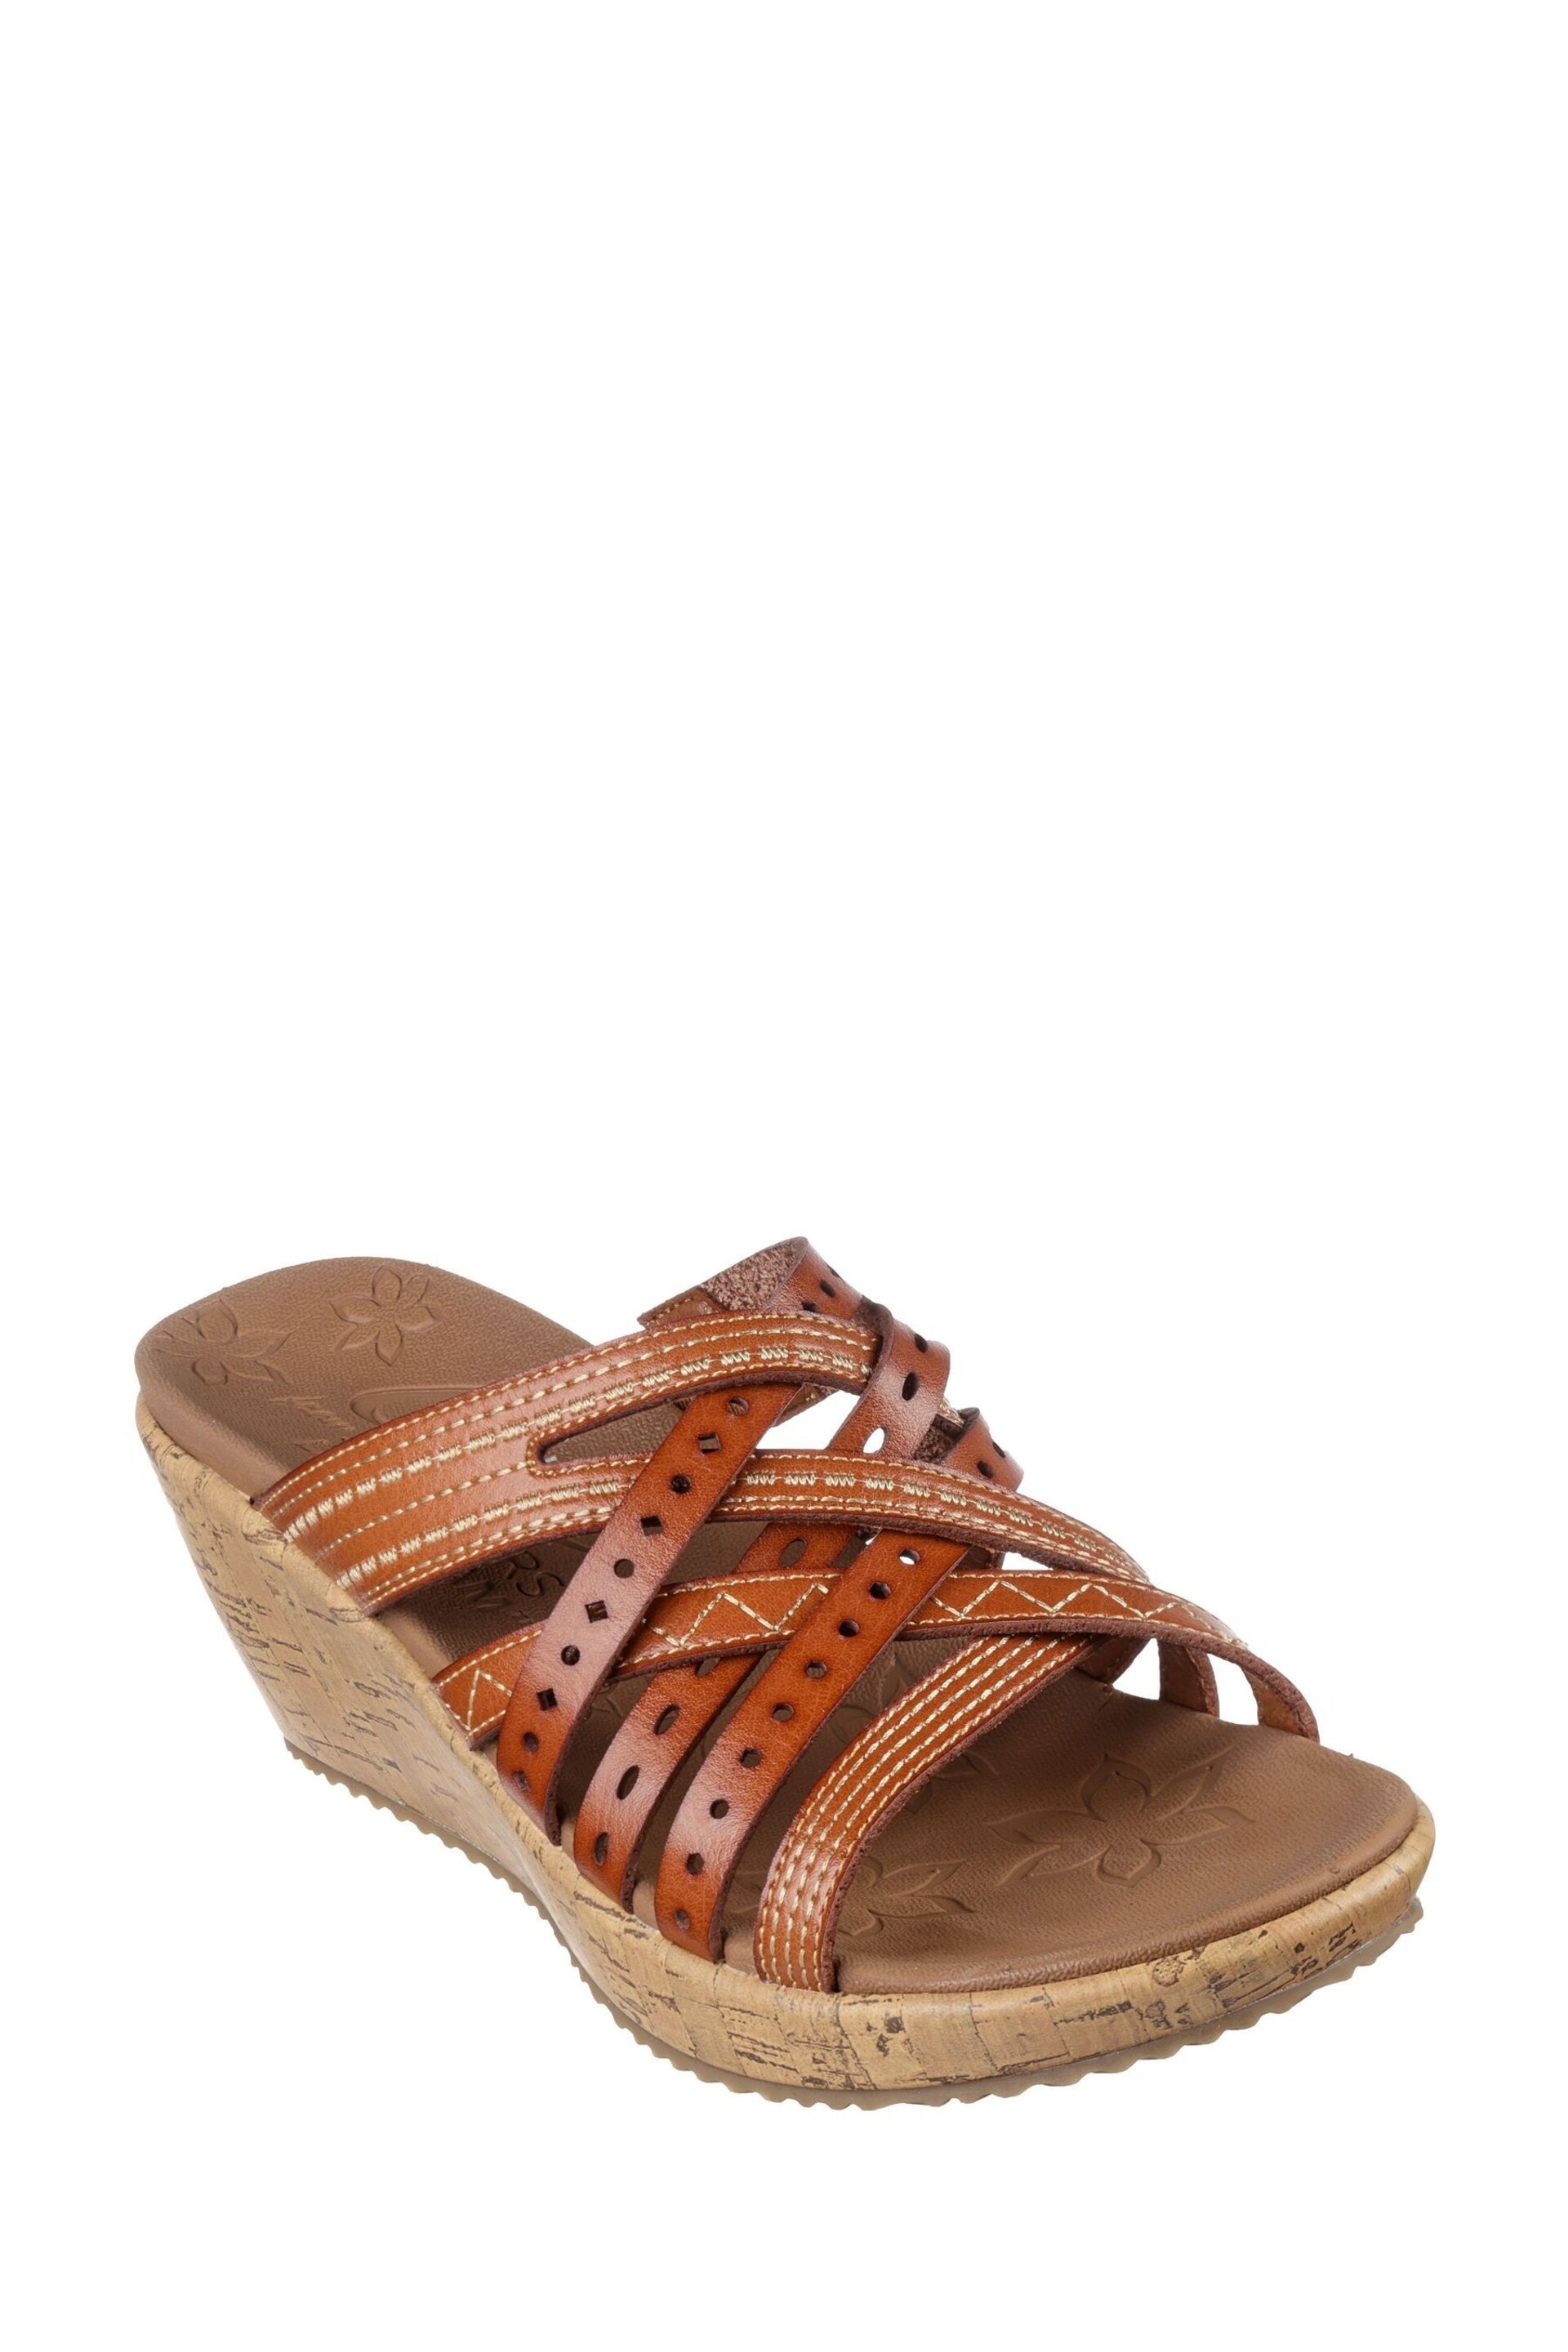 Skechers Brown Beverlee Hot Spring Sandals - Image 3 of 5